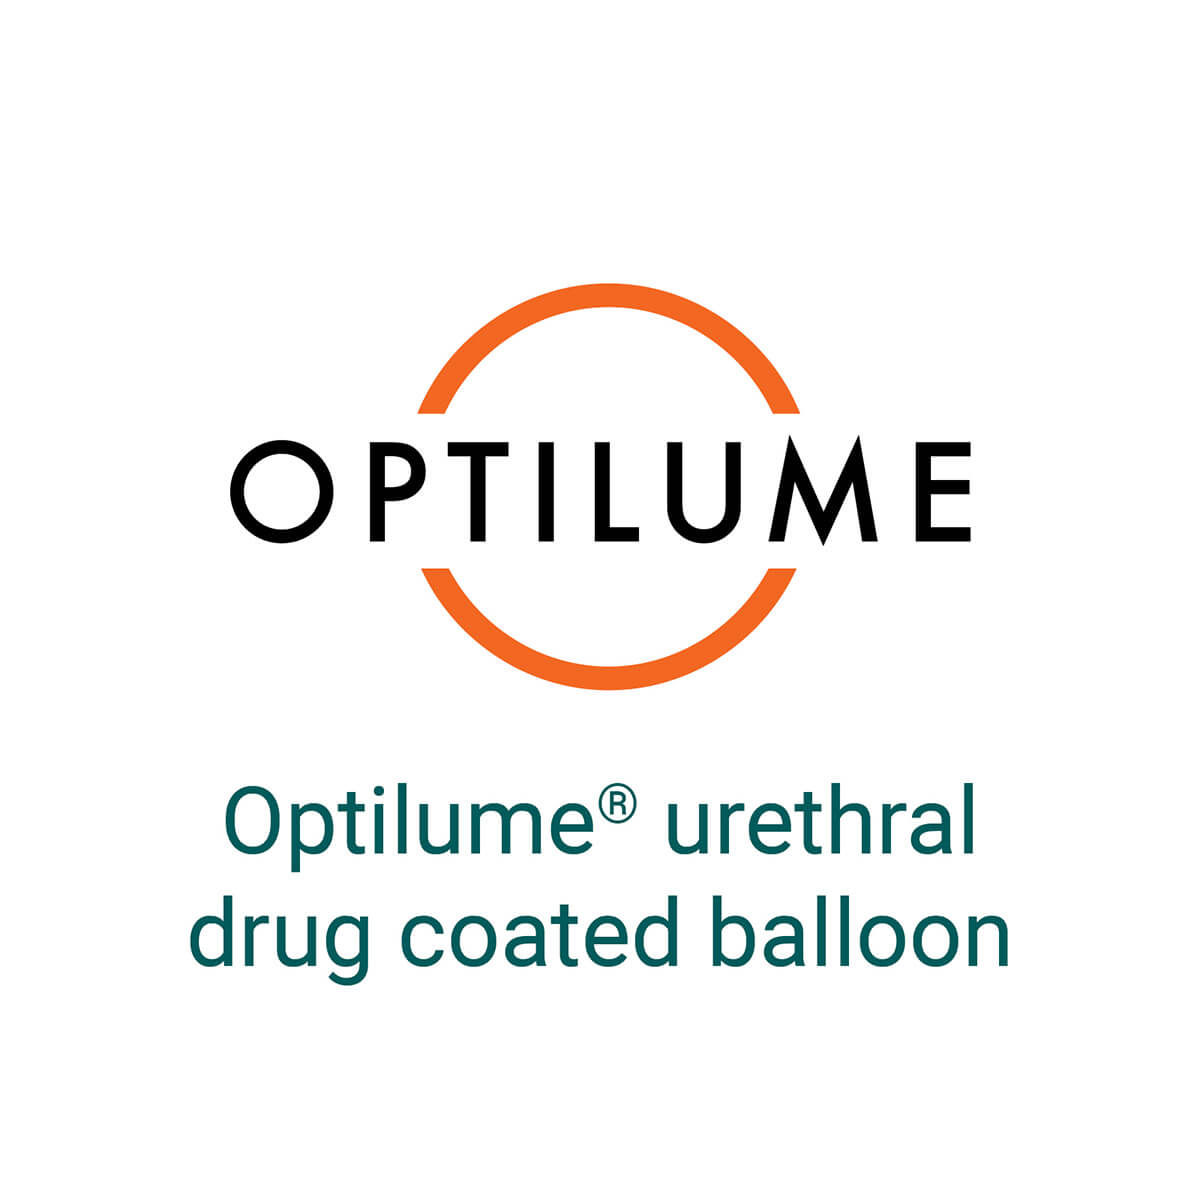 Optilume ist eine neue Behandlungsmethode bei Harnröhrenverengung, angeboten von CUROS urologische Praxis im Raum Köln/Bonn